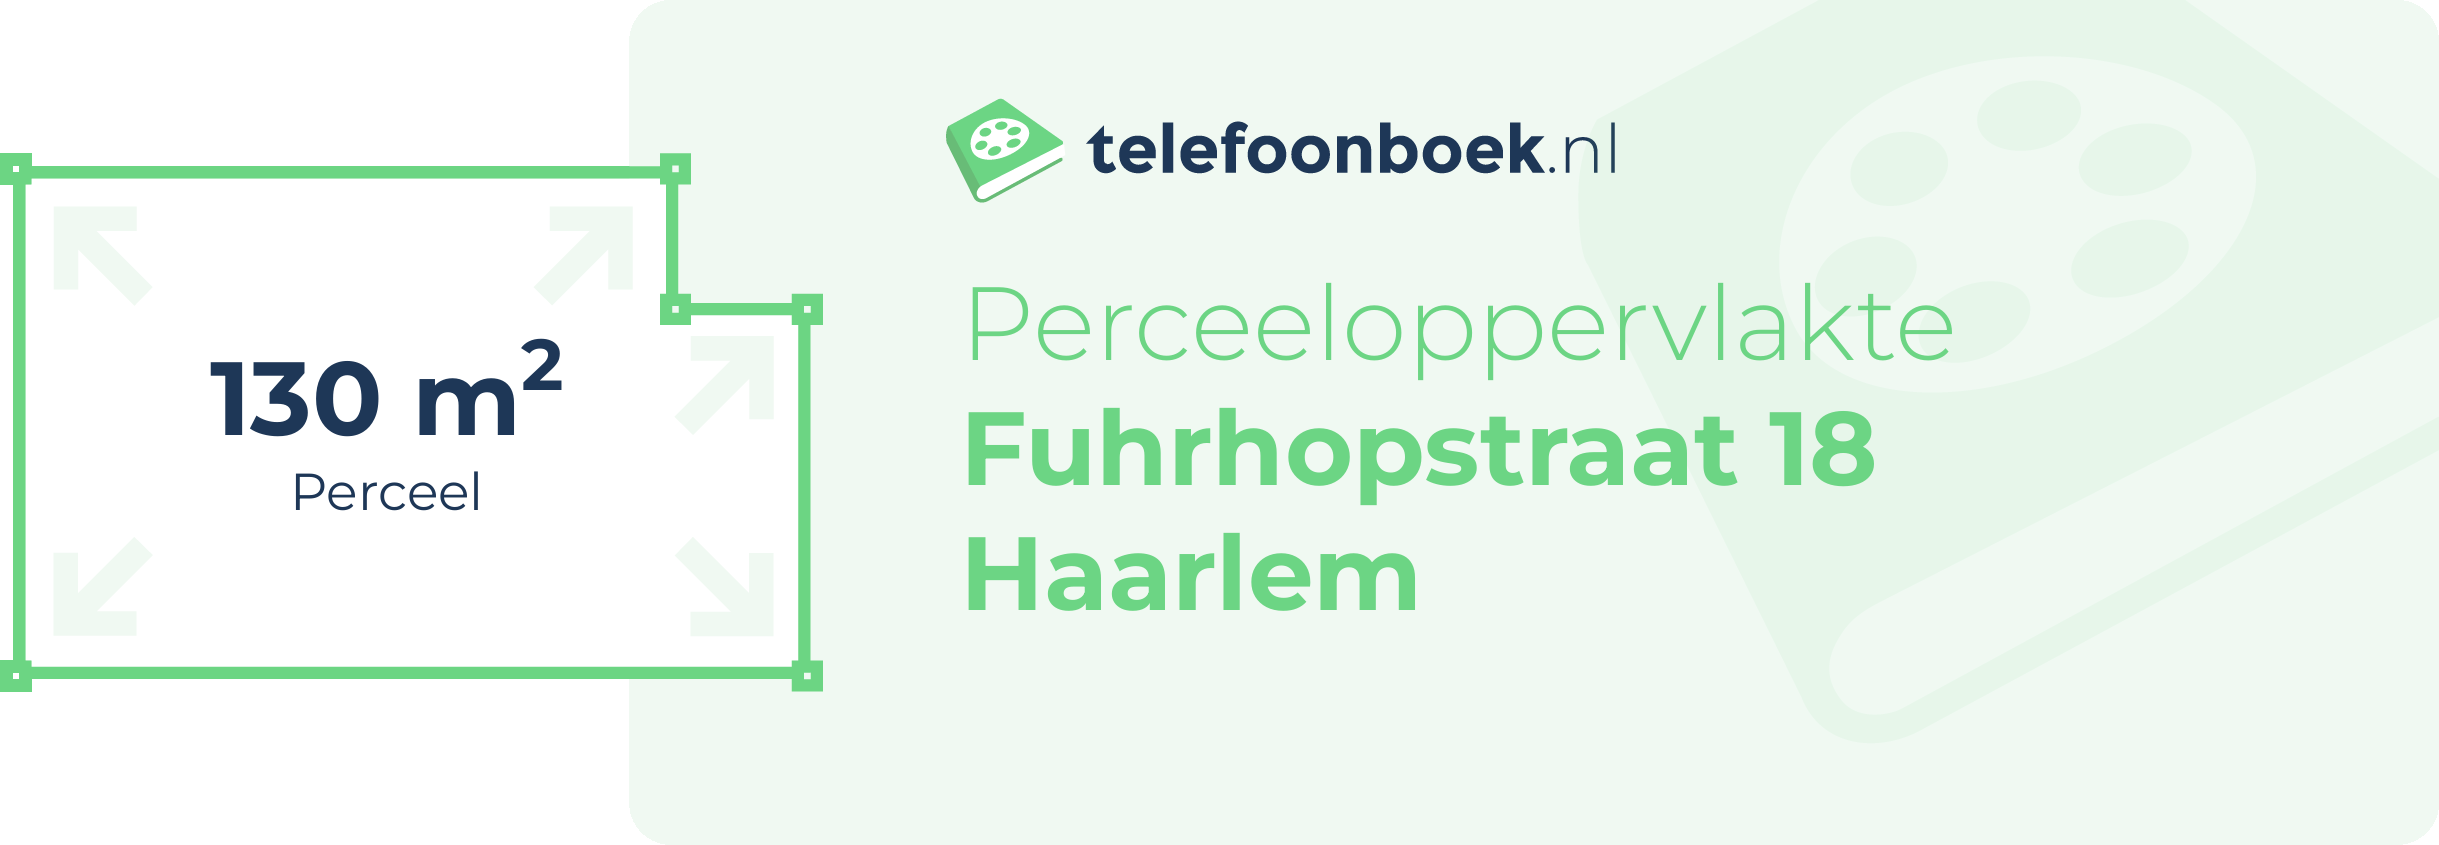 Perceeloppervlakte Fuhrhopstraat 18 Haarlem